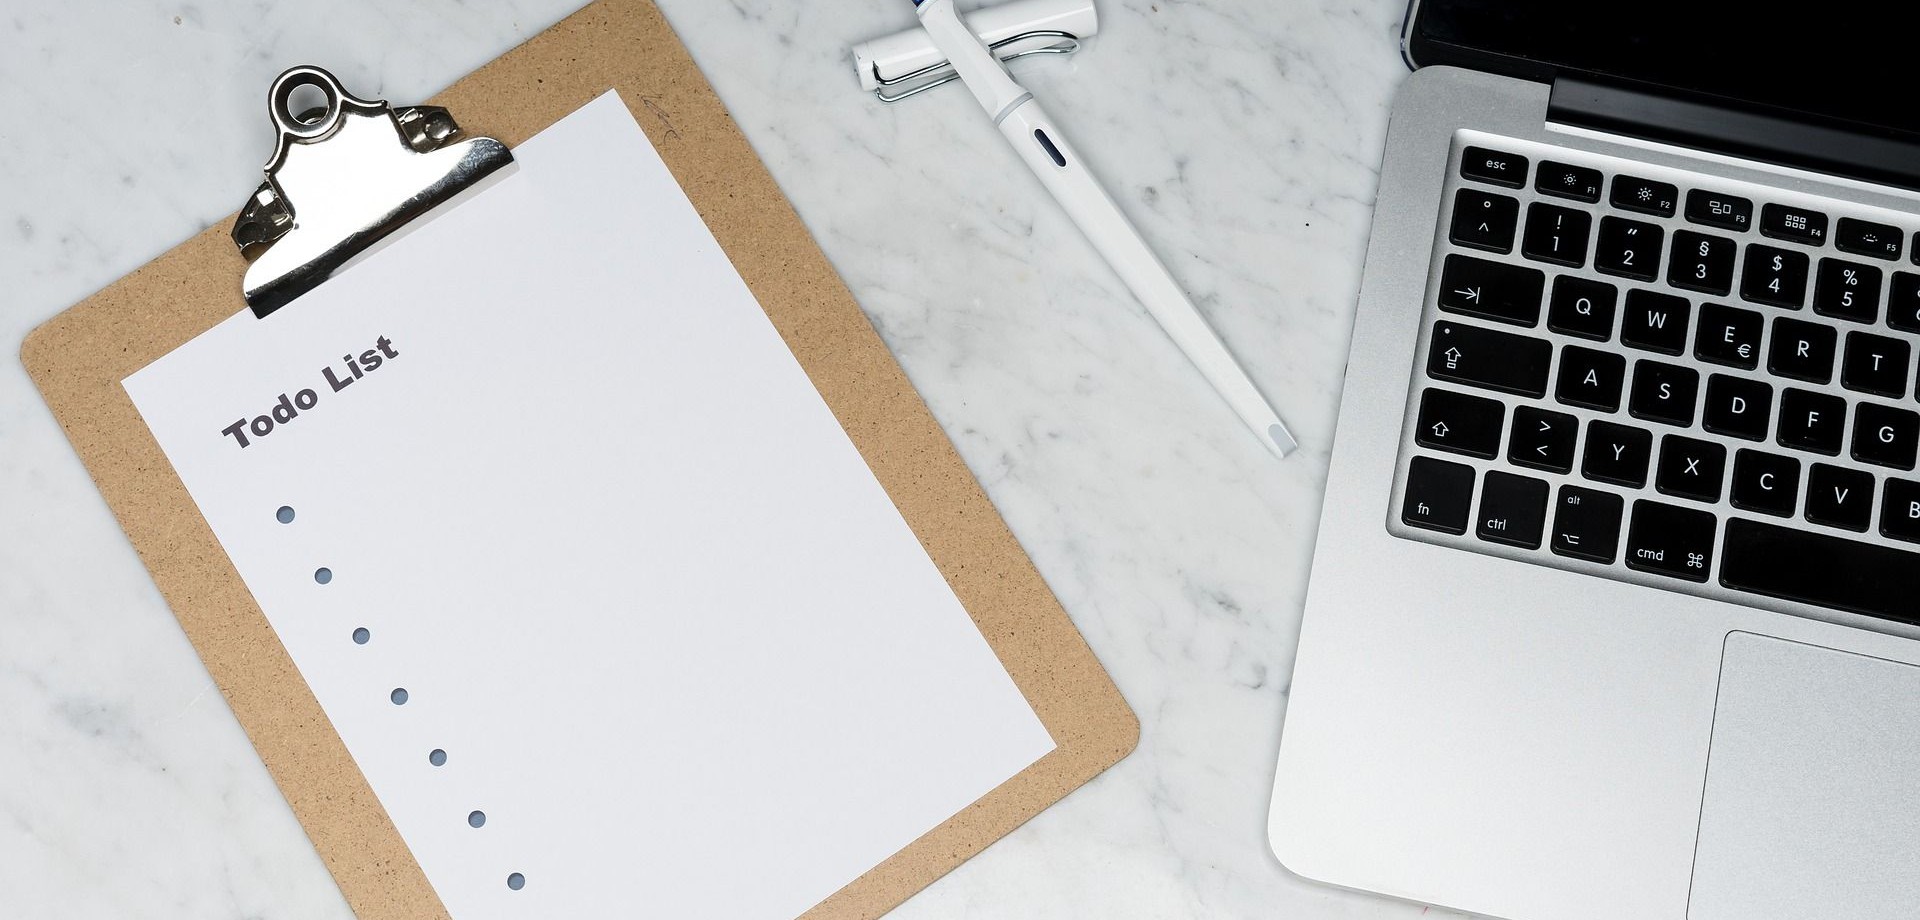 Das Bild zeigt ein Blatt auf einem Klemmbrett, auf dem "To Do List" steht, einen Füller und einen silbernen Laptop, die auf einem Marmortisch liegen.